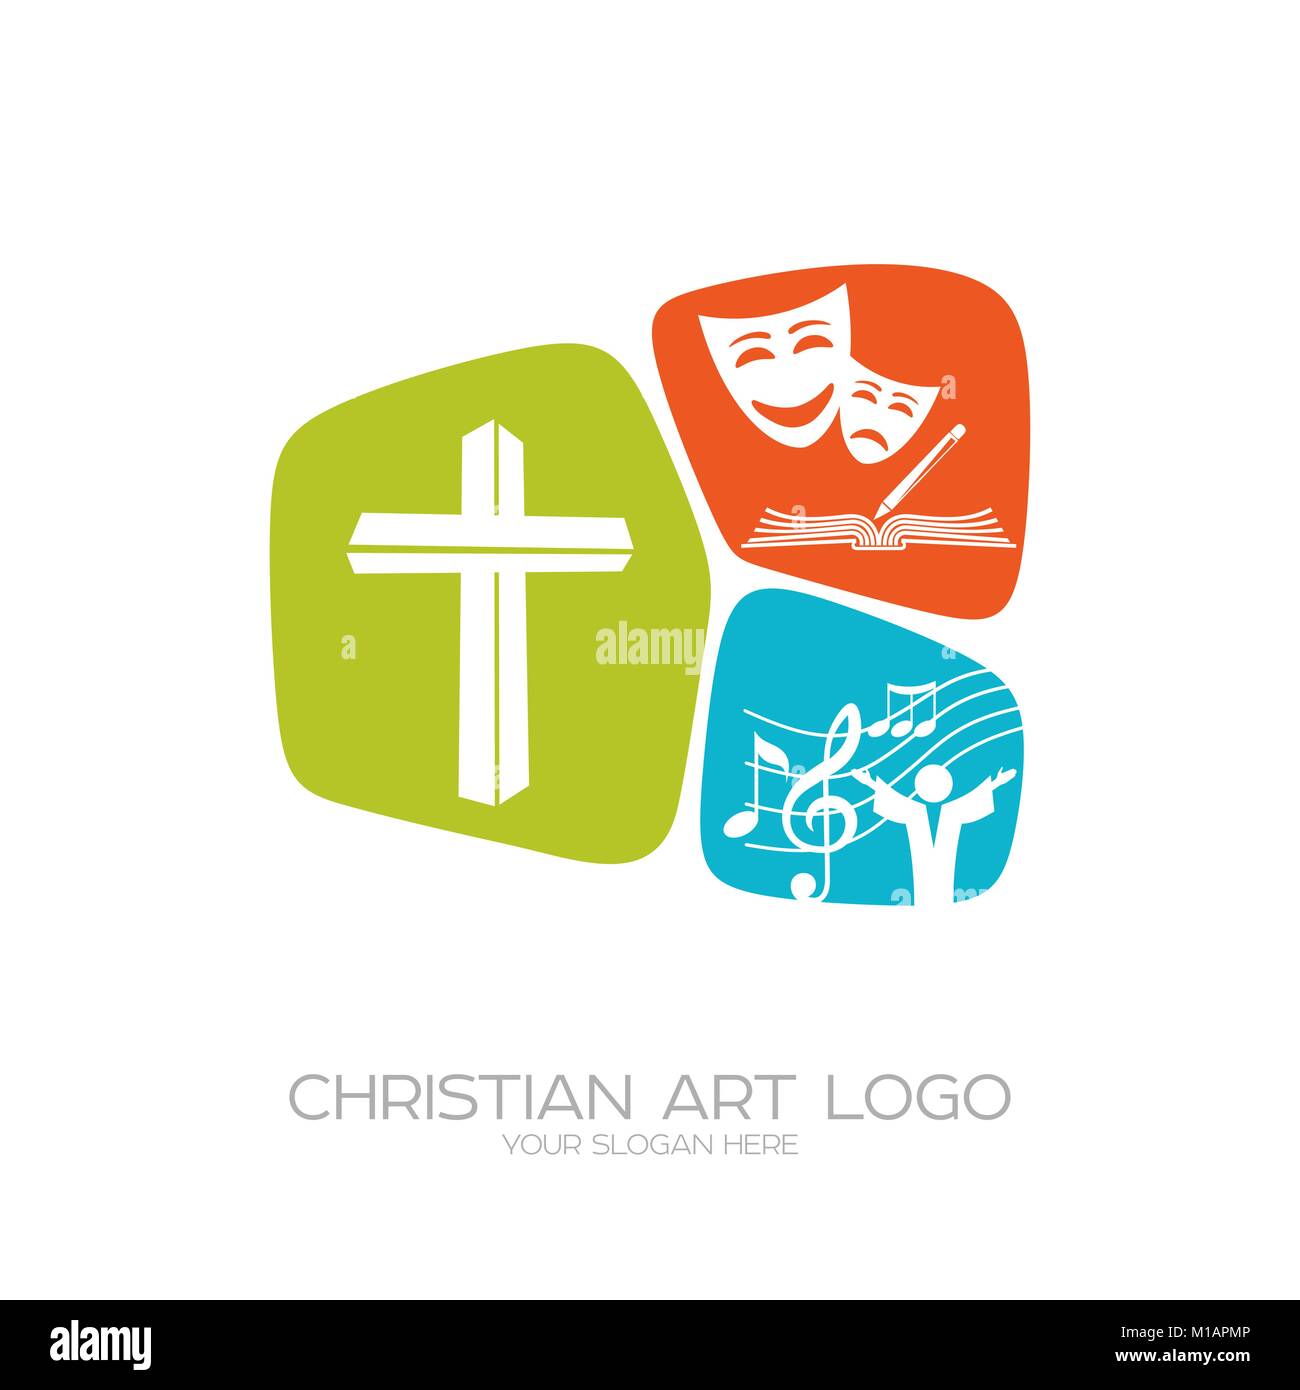 Logo de l'équipe de création théâtrale de la scène chrétienne productions, poèmes, comédies musicales Illustration de Vecteur